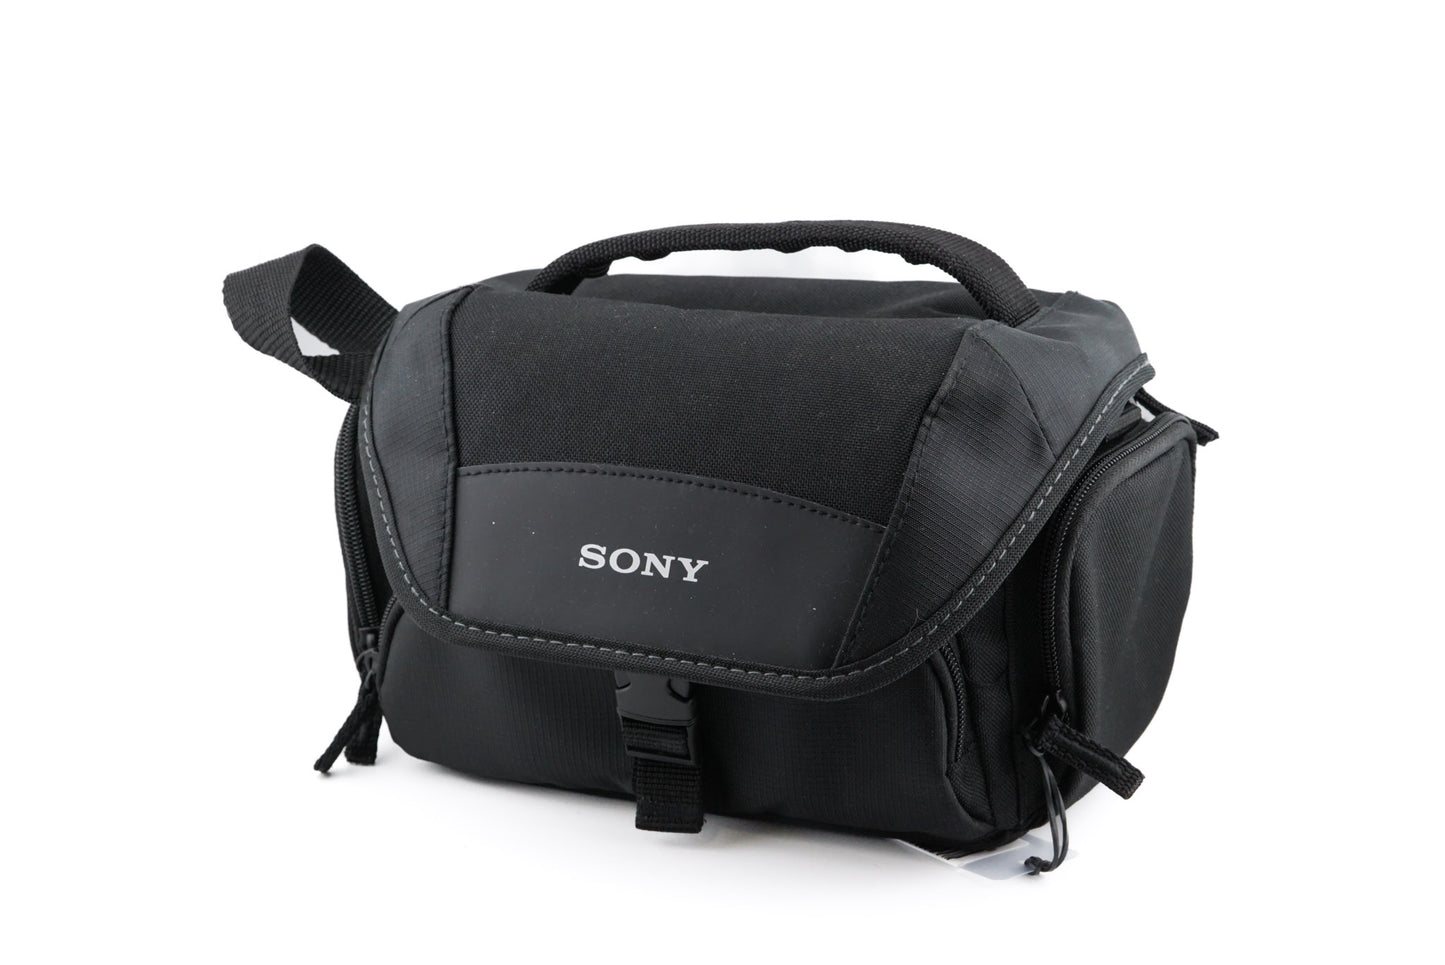 Sony Camera Bag - Accessory